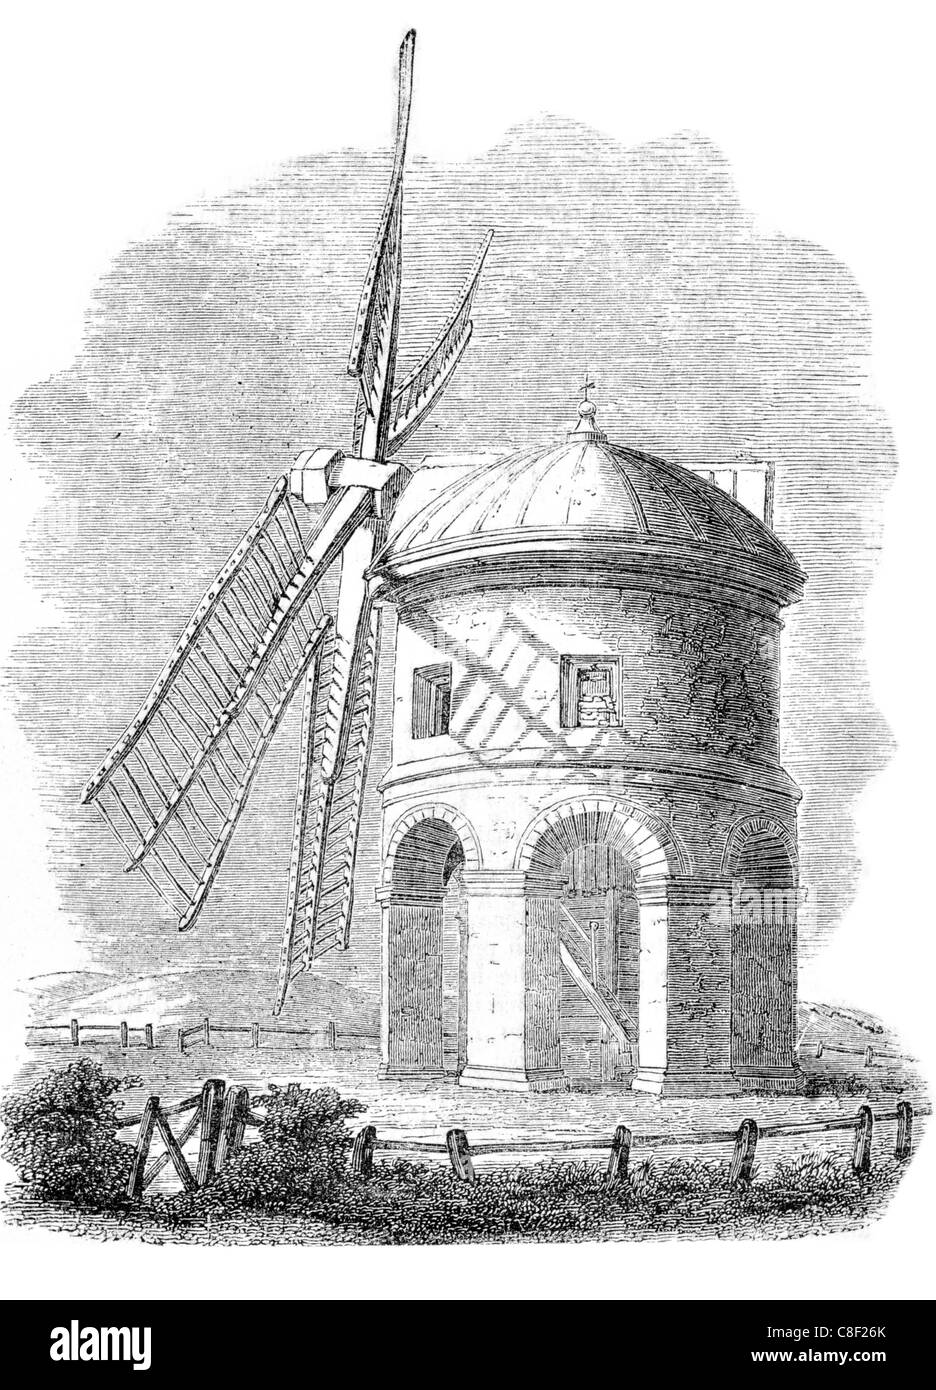 Inigo Jones Chesterton Windmühle Steinturm gewölbt Warwickshire Denkmalschutz ich Gebäude Wahrzeichen Hügel Sir Edward Peyto Stockfoto